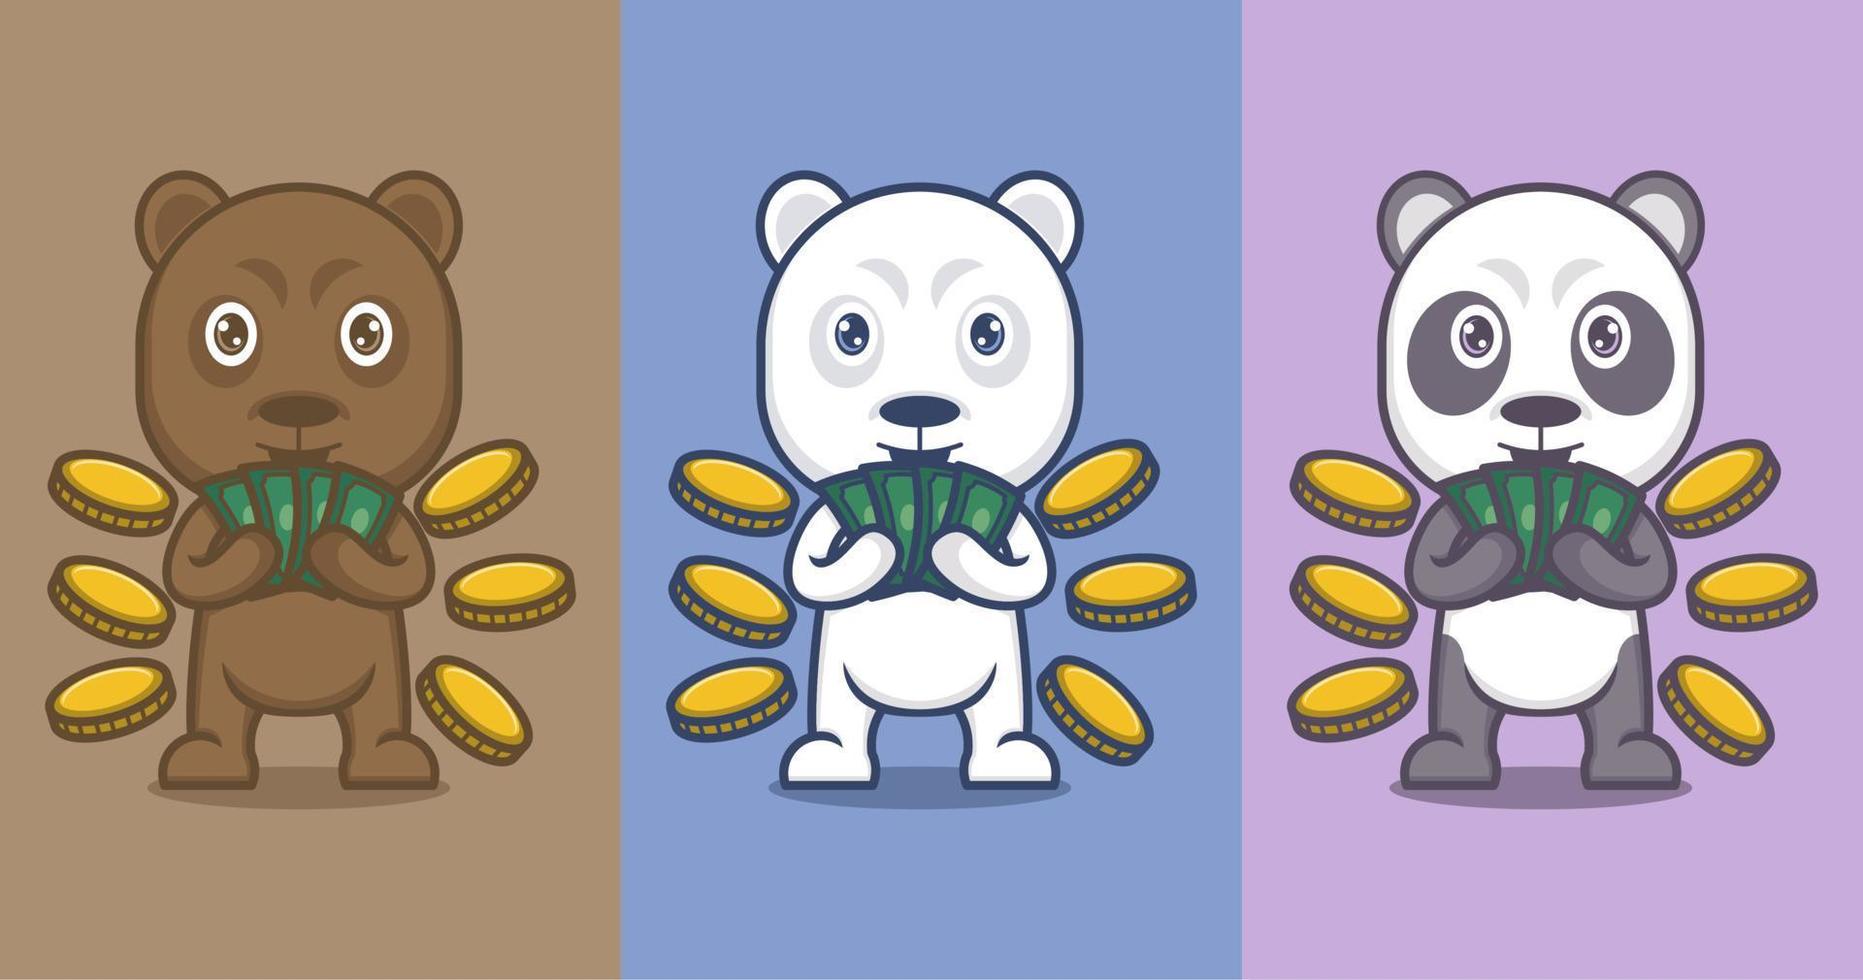 linda dibujos animados polar oso y panda vector